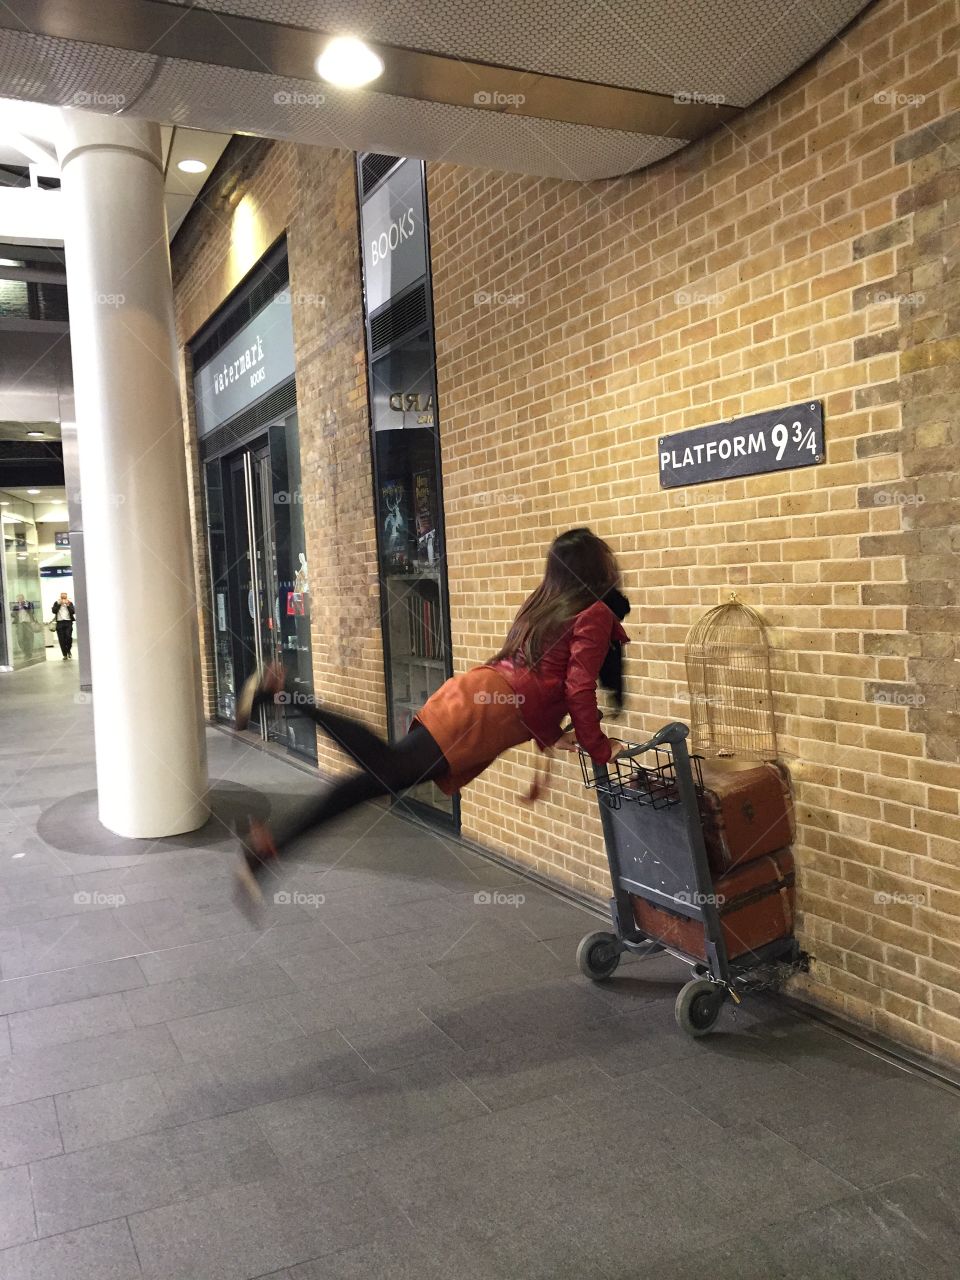 Platform 9 3/4. Harry Potter's path. London, 2015.